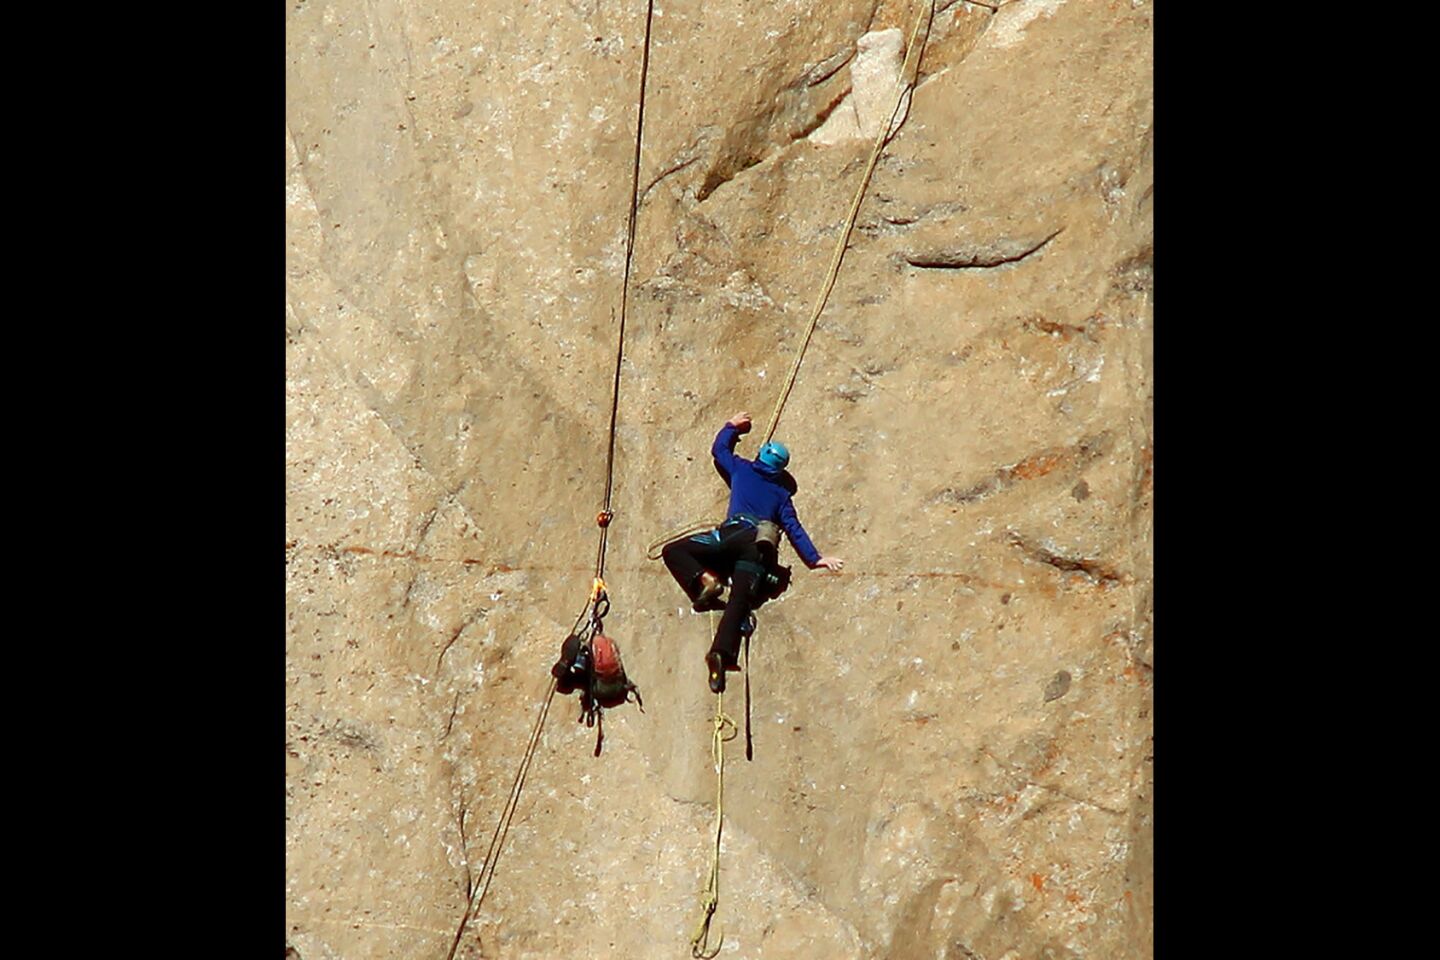 El Capitan free climb